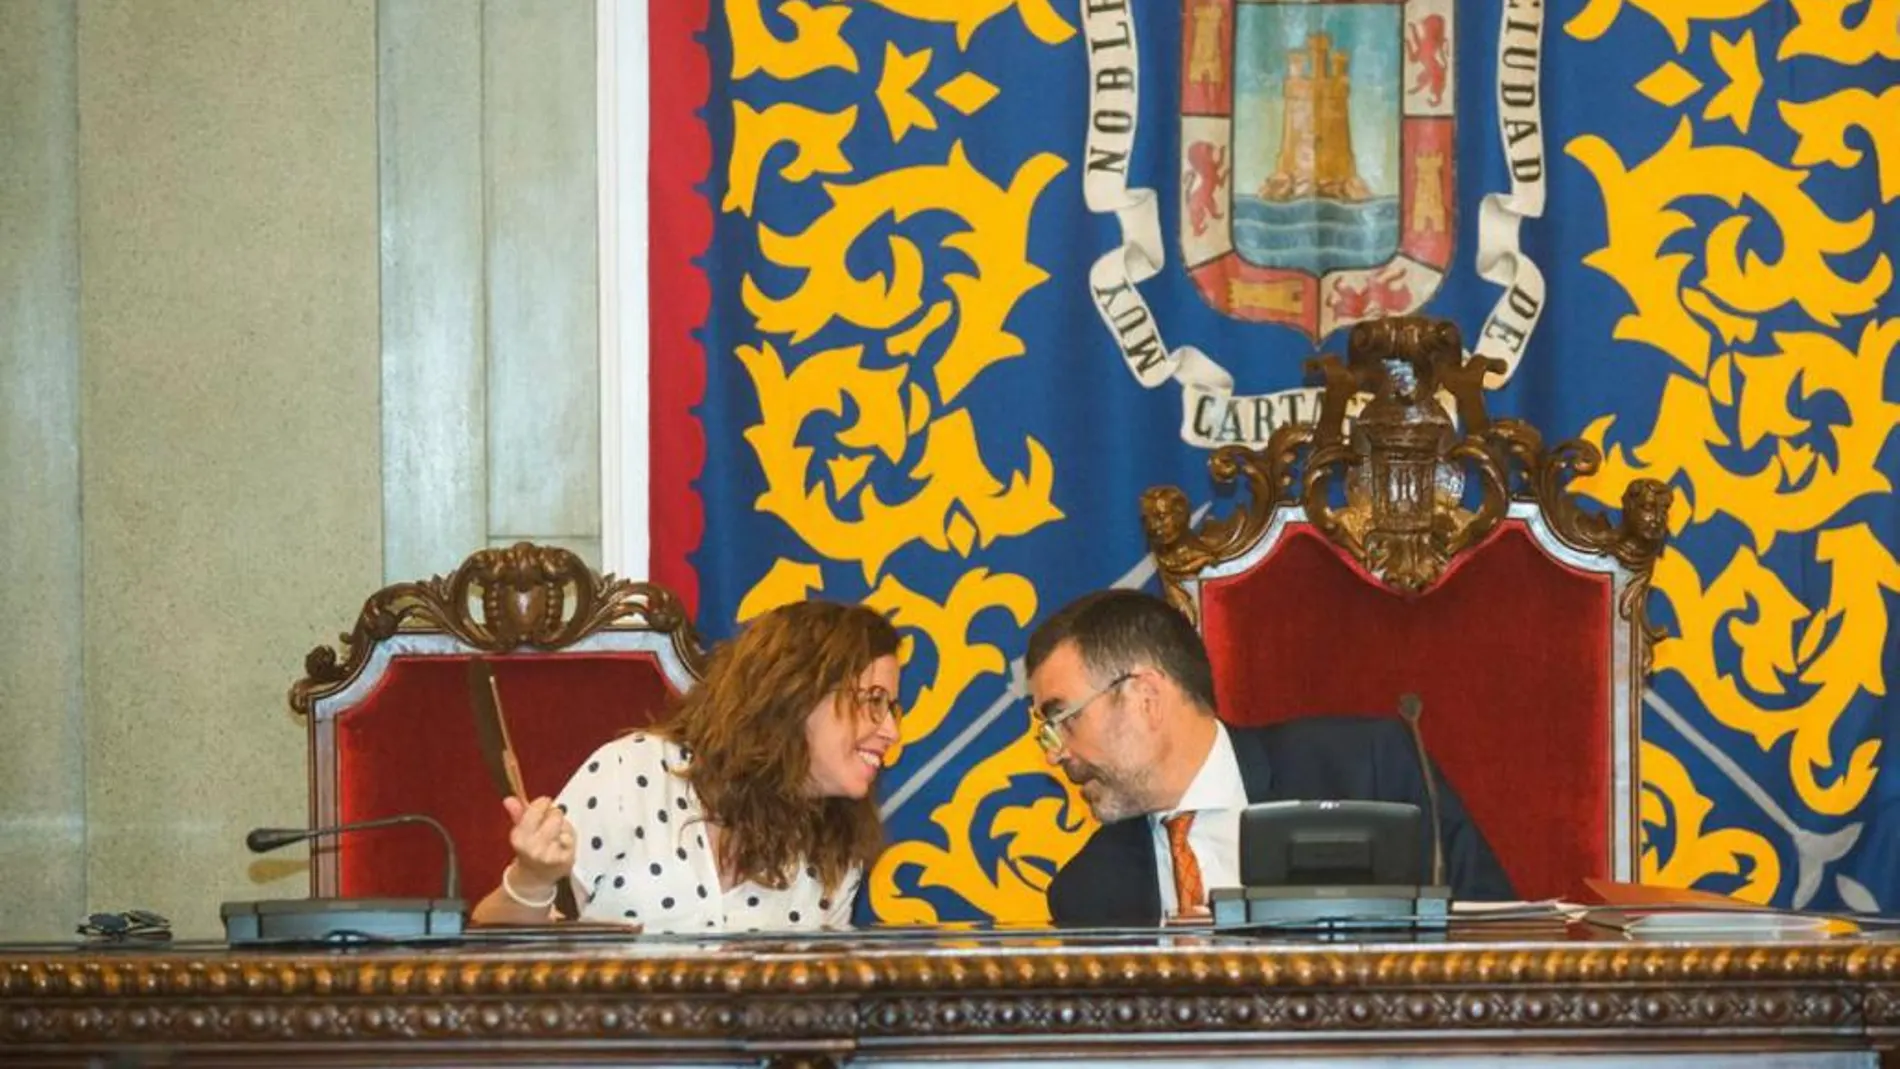 La socialista Ana Belén Castejón asumió ayer la Alcaldía en funciones por el relevo de su antecesor, José López